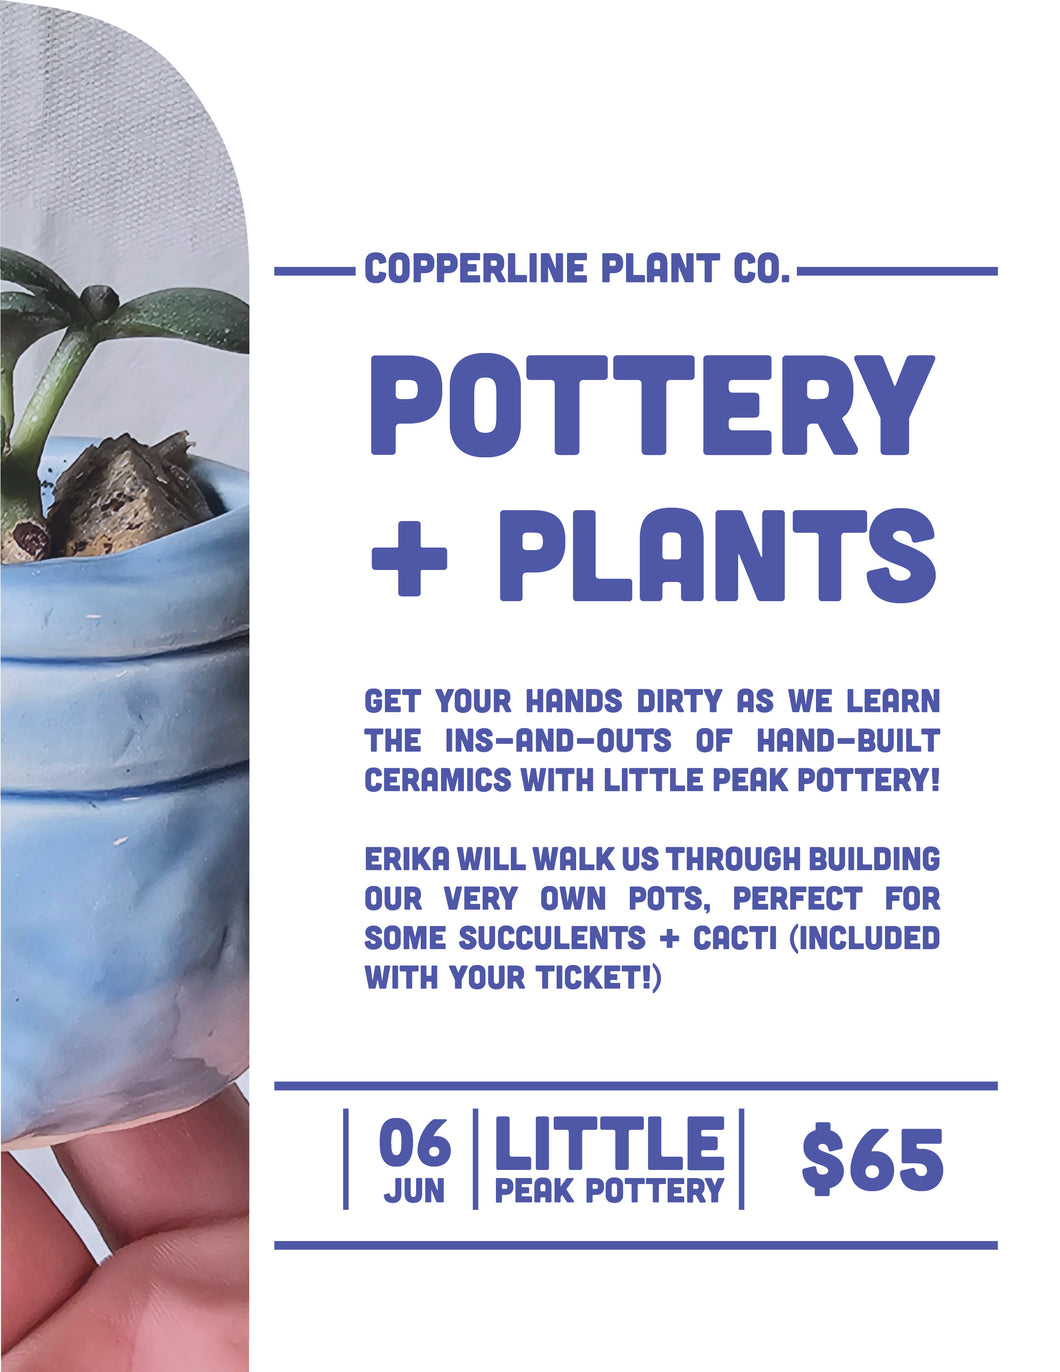 June 06 | Pottery + Plants w/ Little Peak Pottery